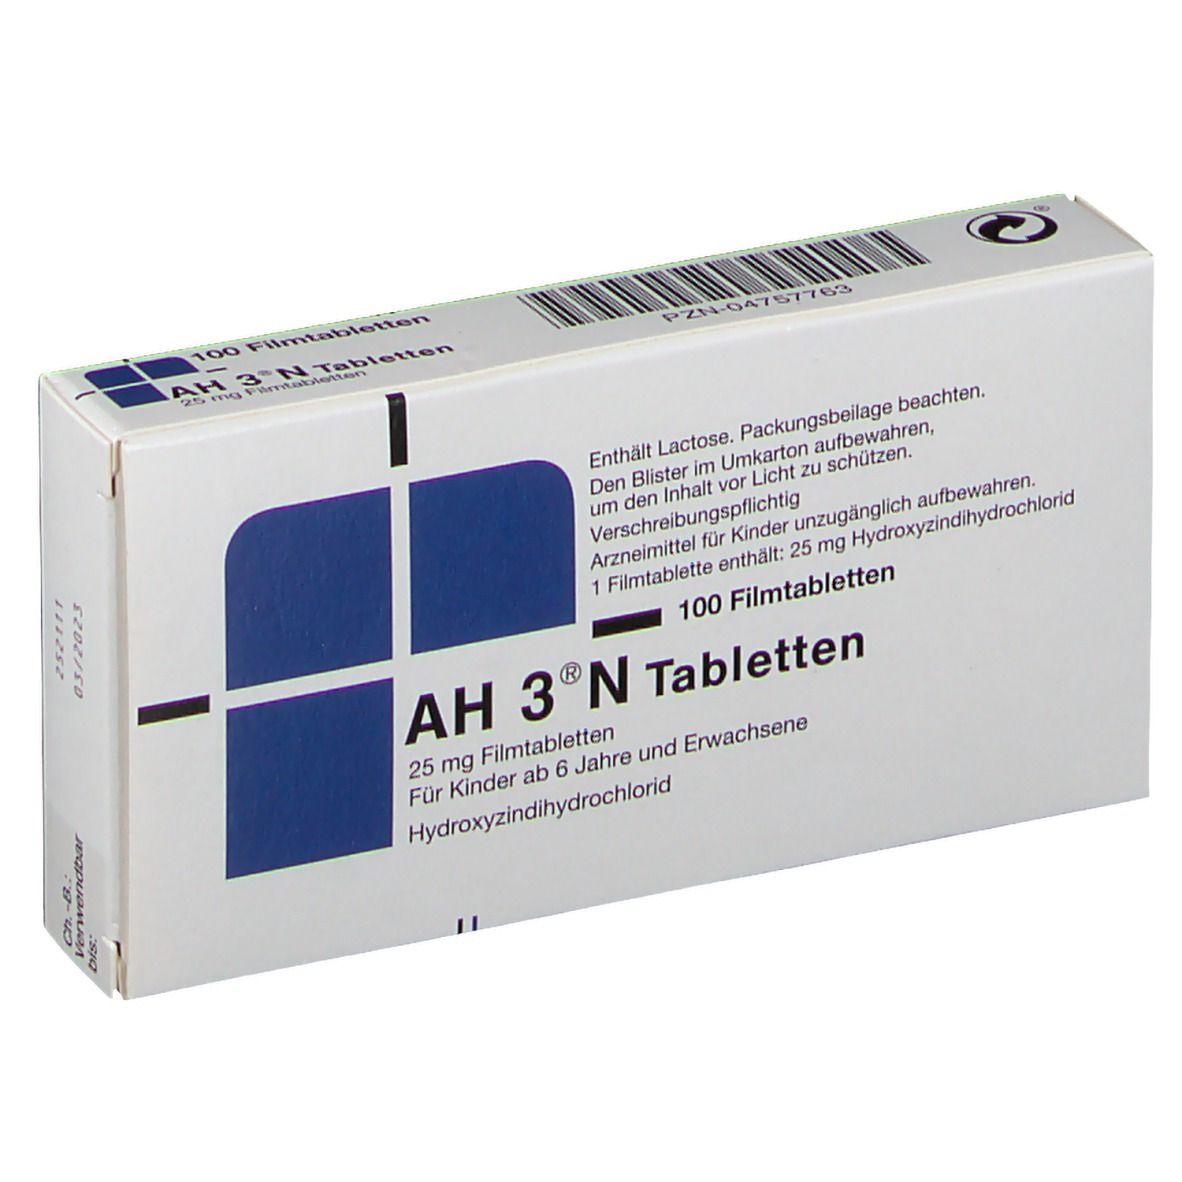 AH 3® N 25 mg